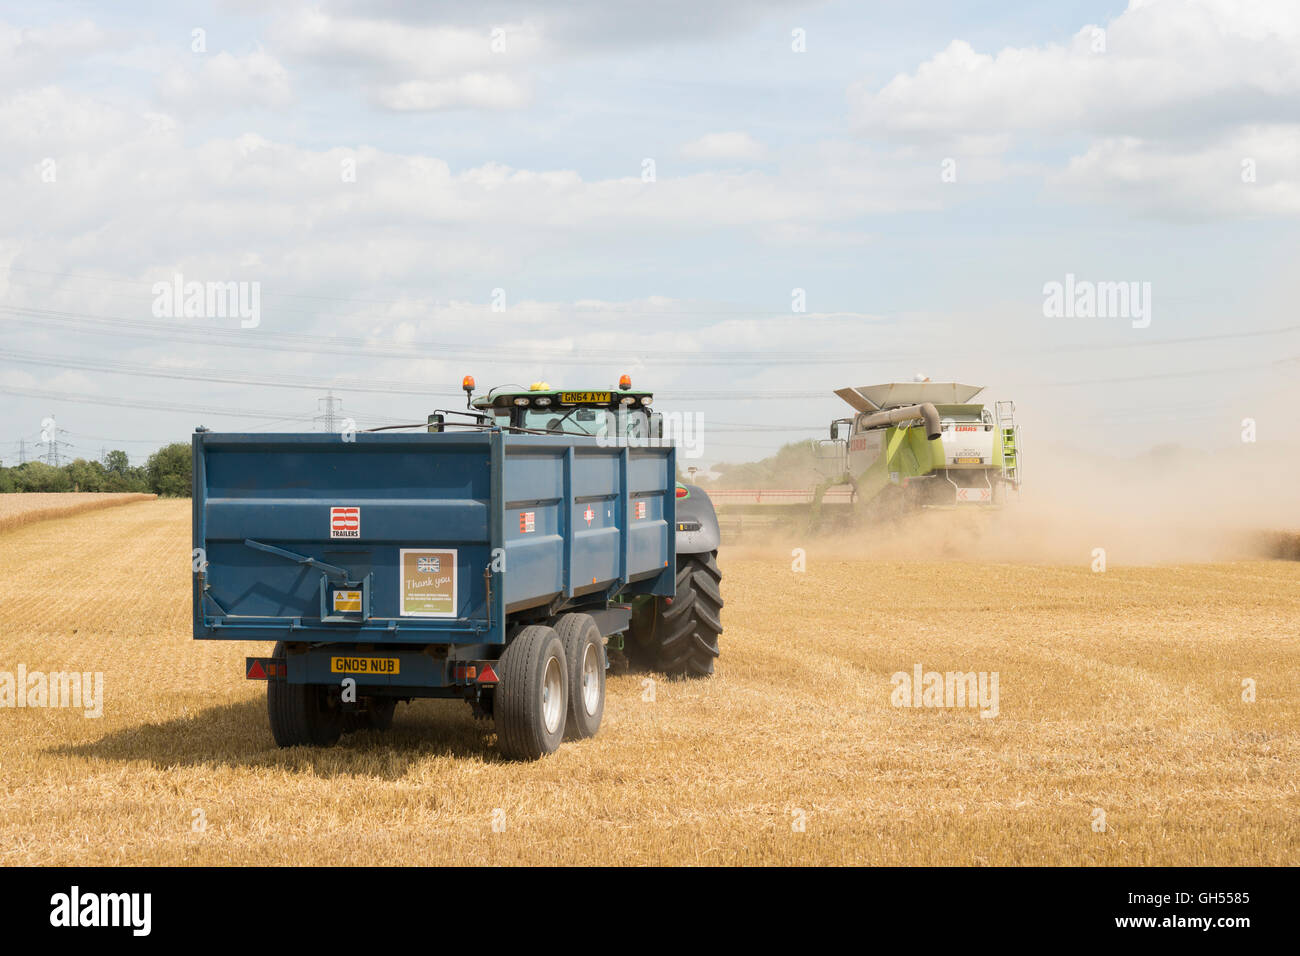 Harvester, machines, ferme, terrain, RIPE, British, la récolte, la récolte, la poussière, la chasse, poursuite, heureux, heureux, mépris, remarque, Banque D'Images